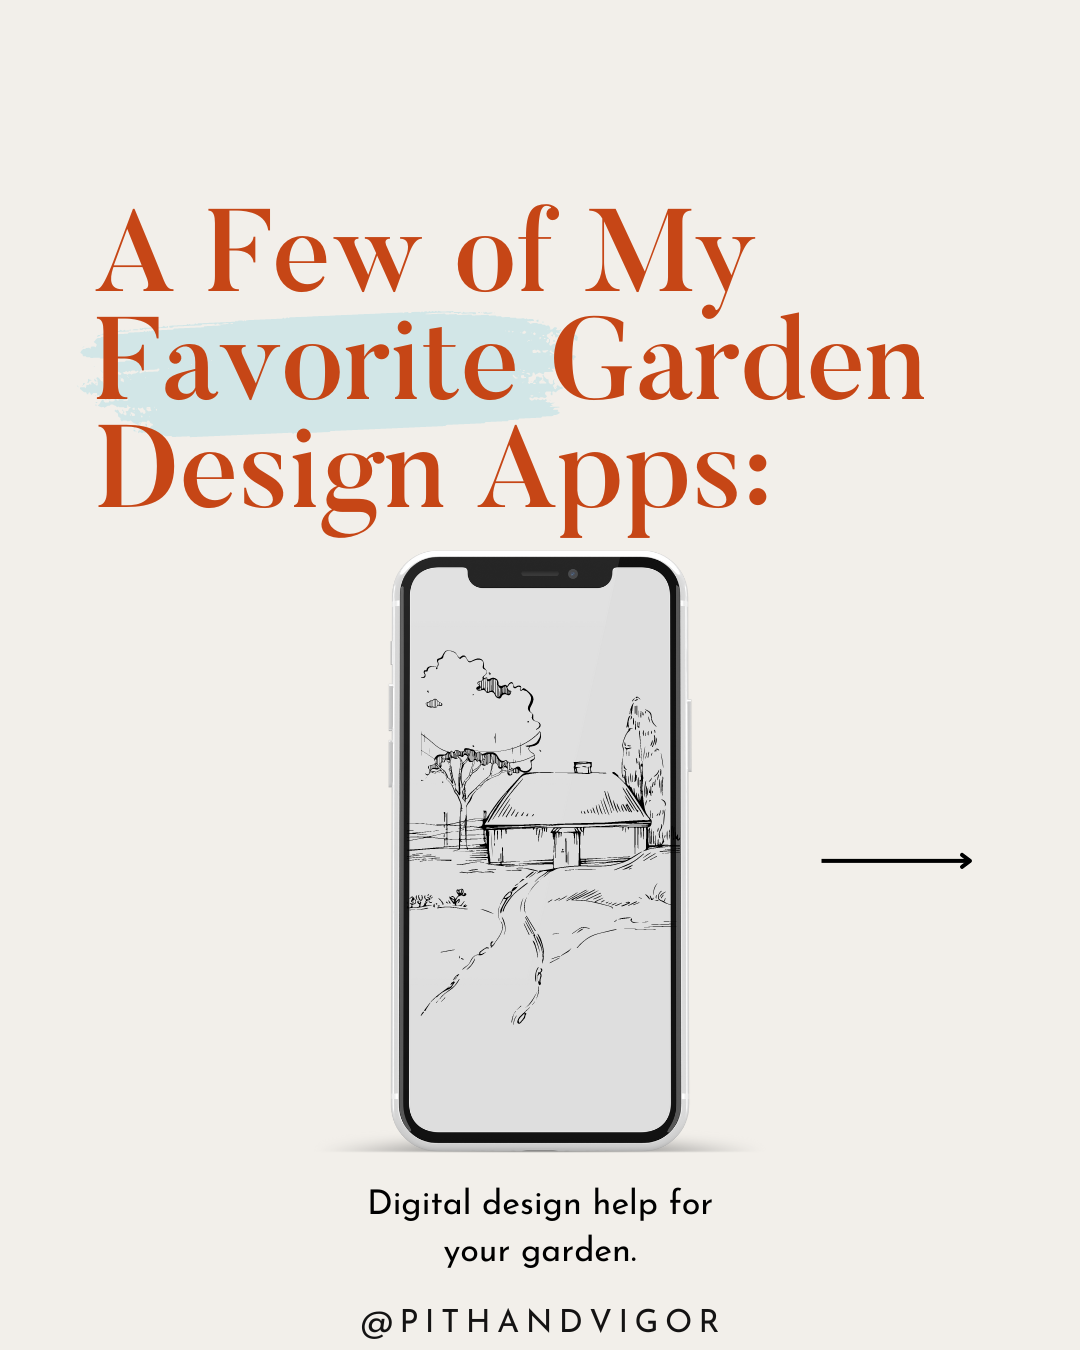 My favorite garden design apps.